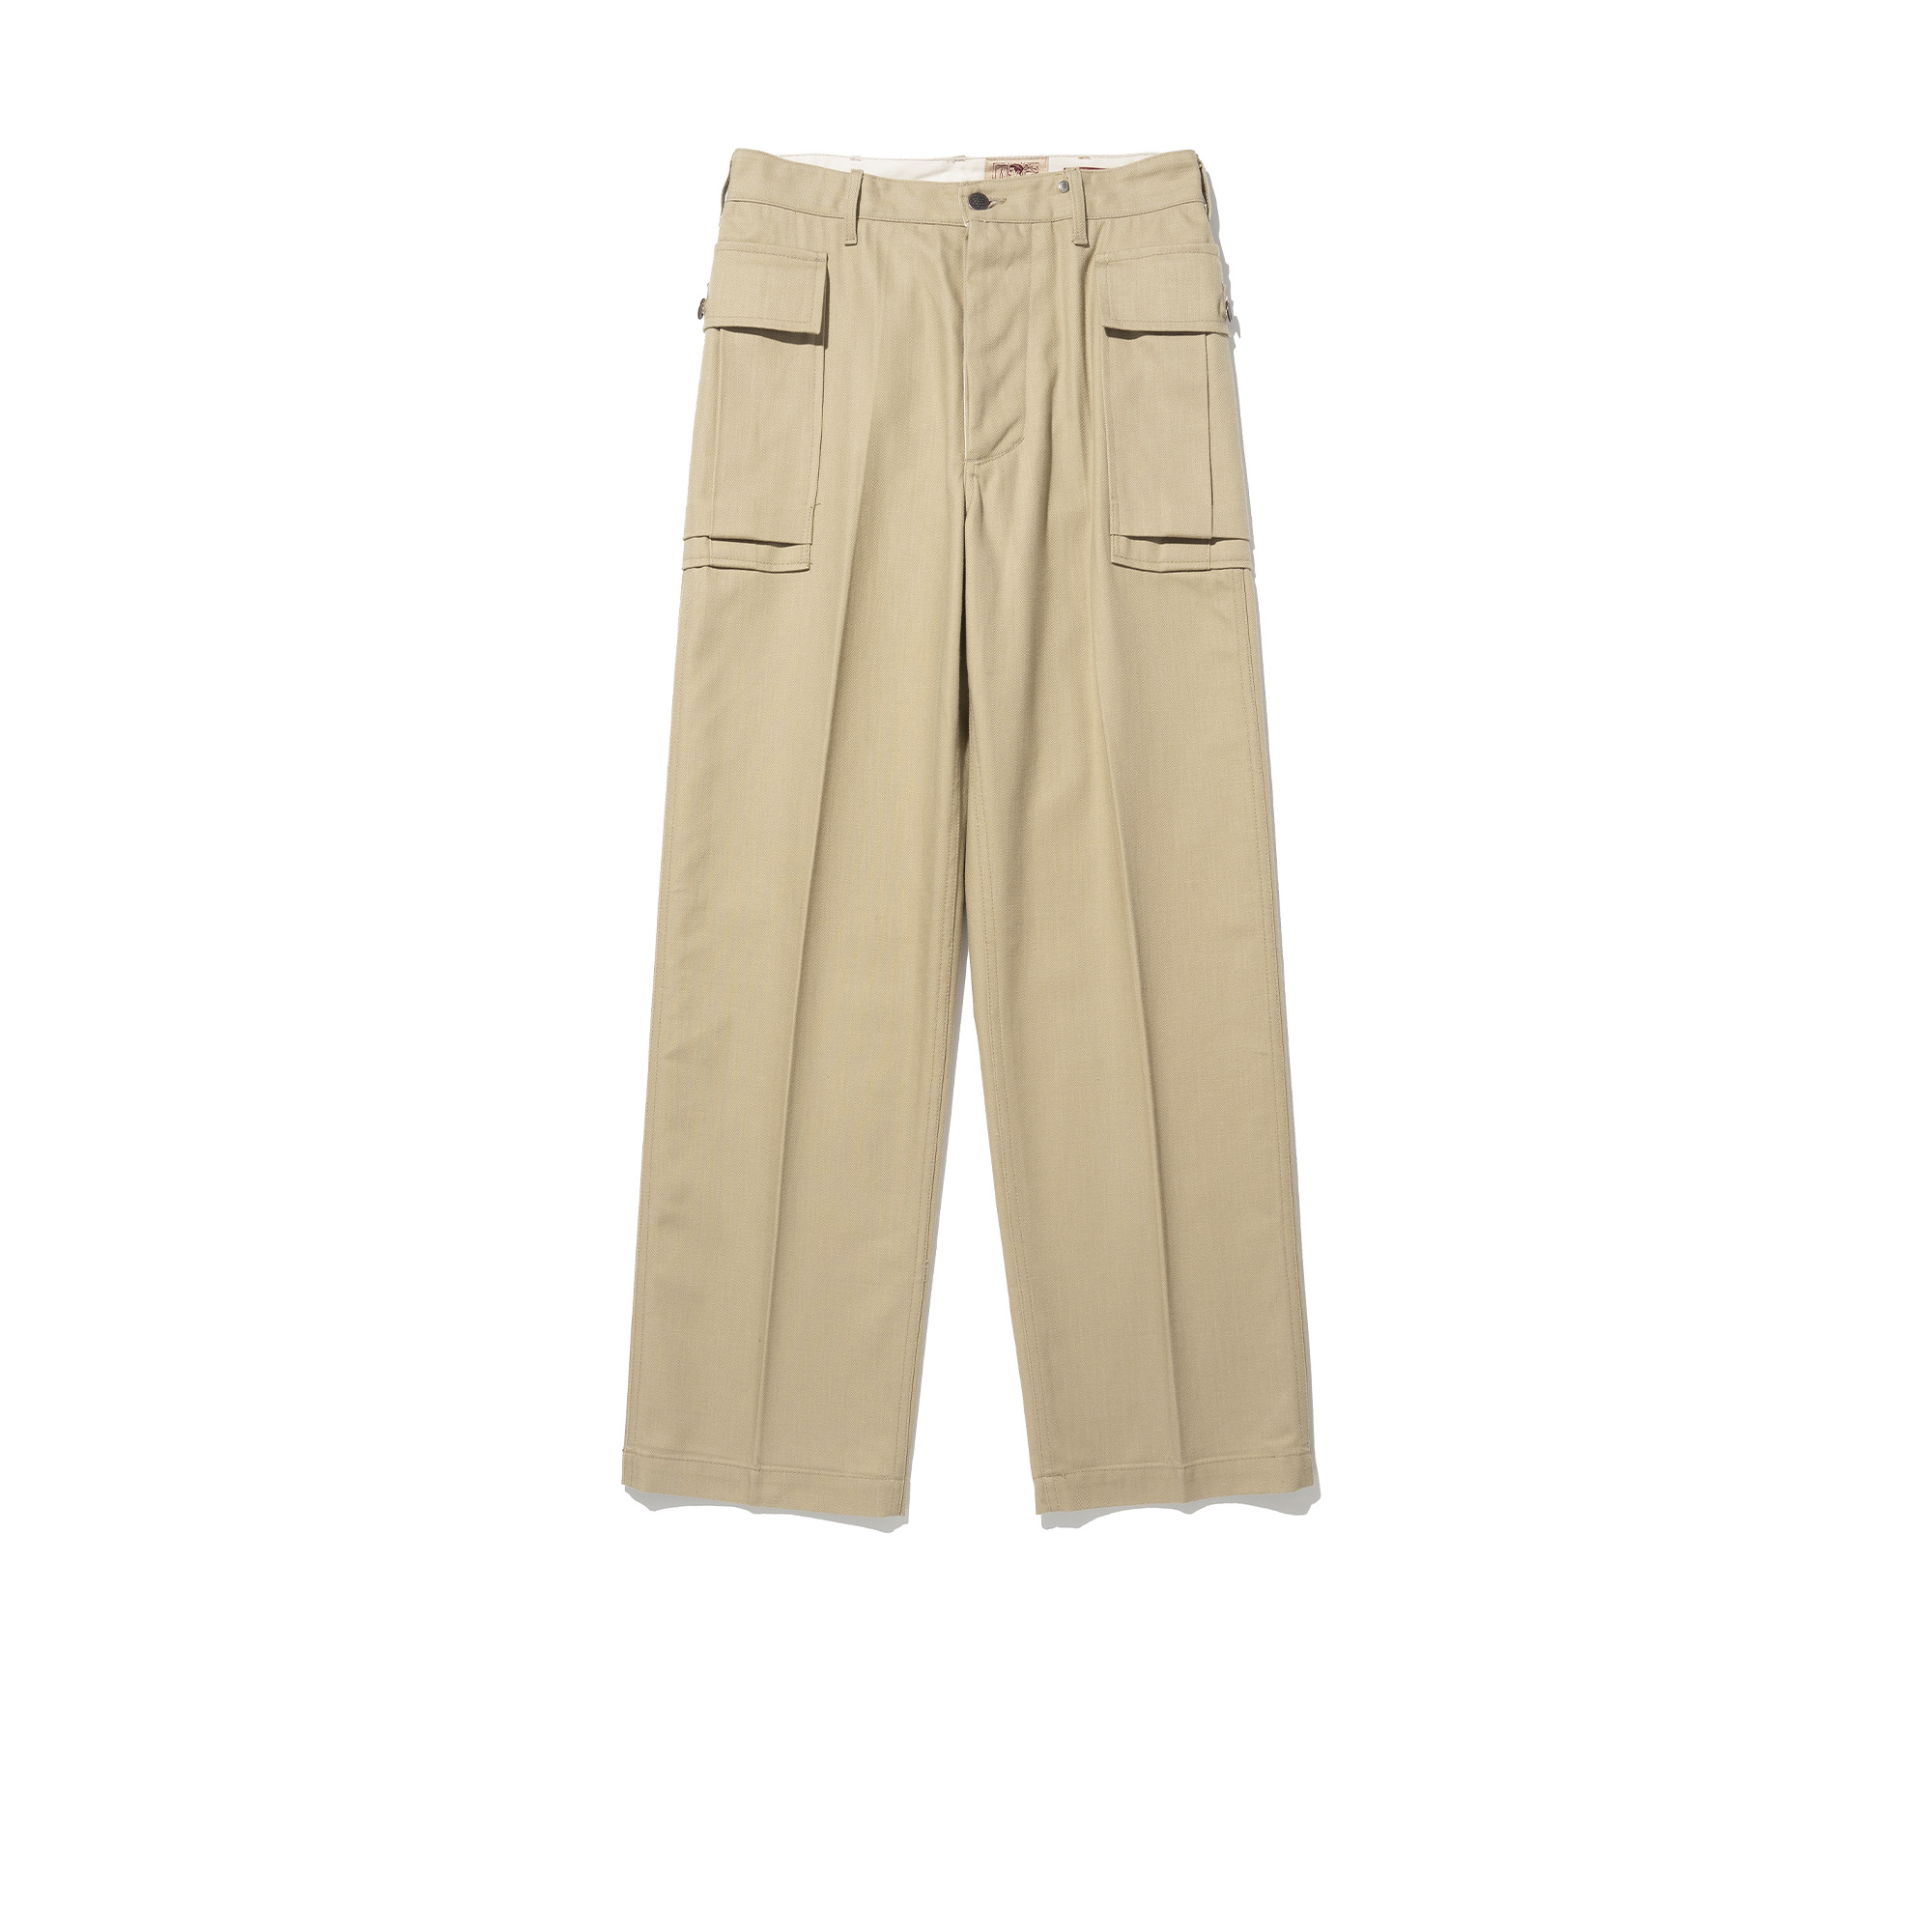 M43 Field Trousers [Beige]리넥츠